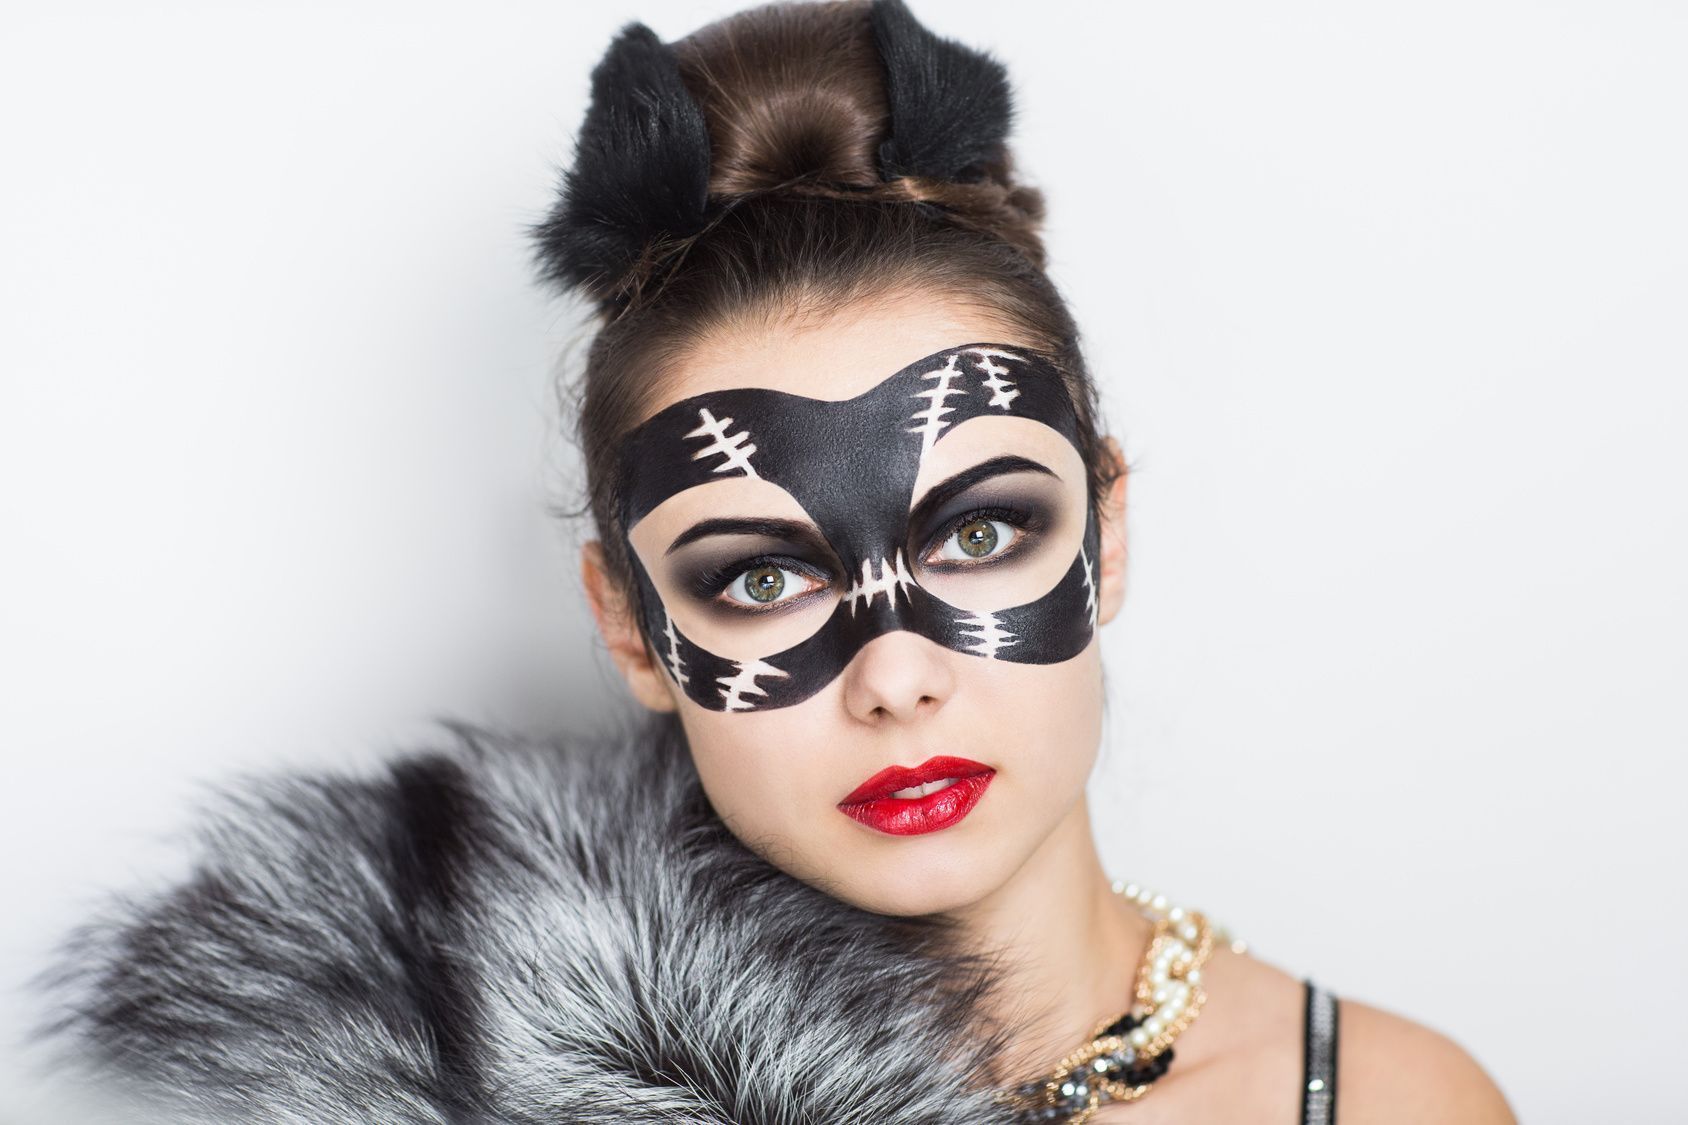 Ob als Maske oder aufgemalt – das Catwoman-Kostüm kommt nicht ohne entsprechende Katzenmaske aus.